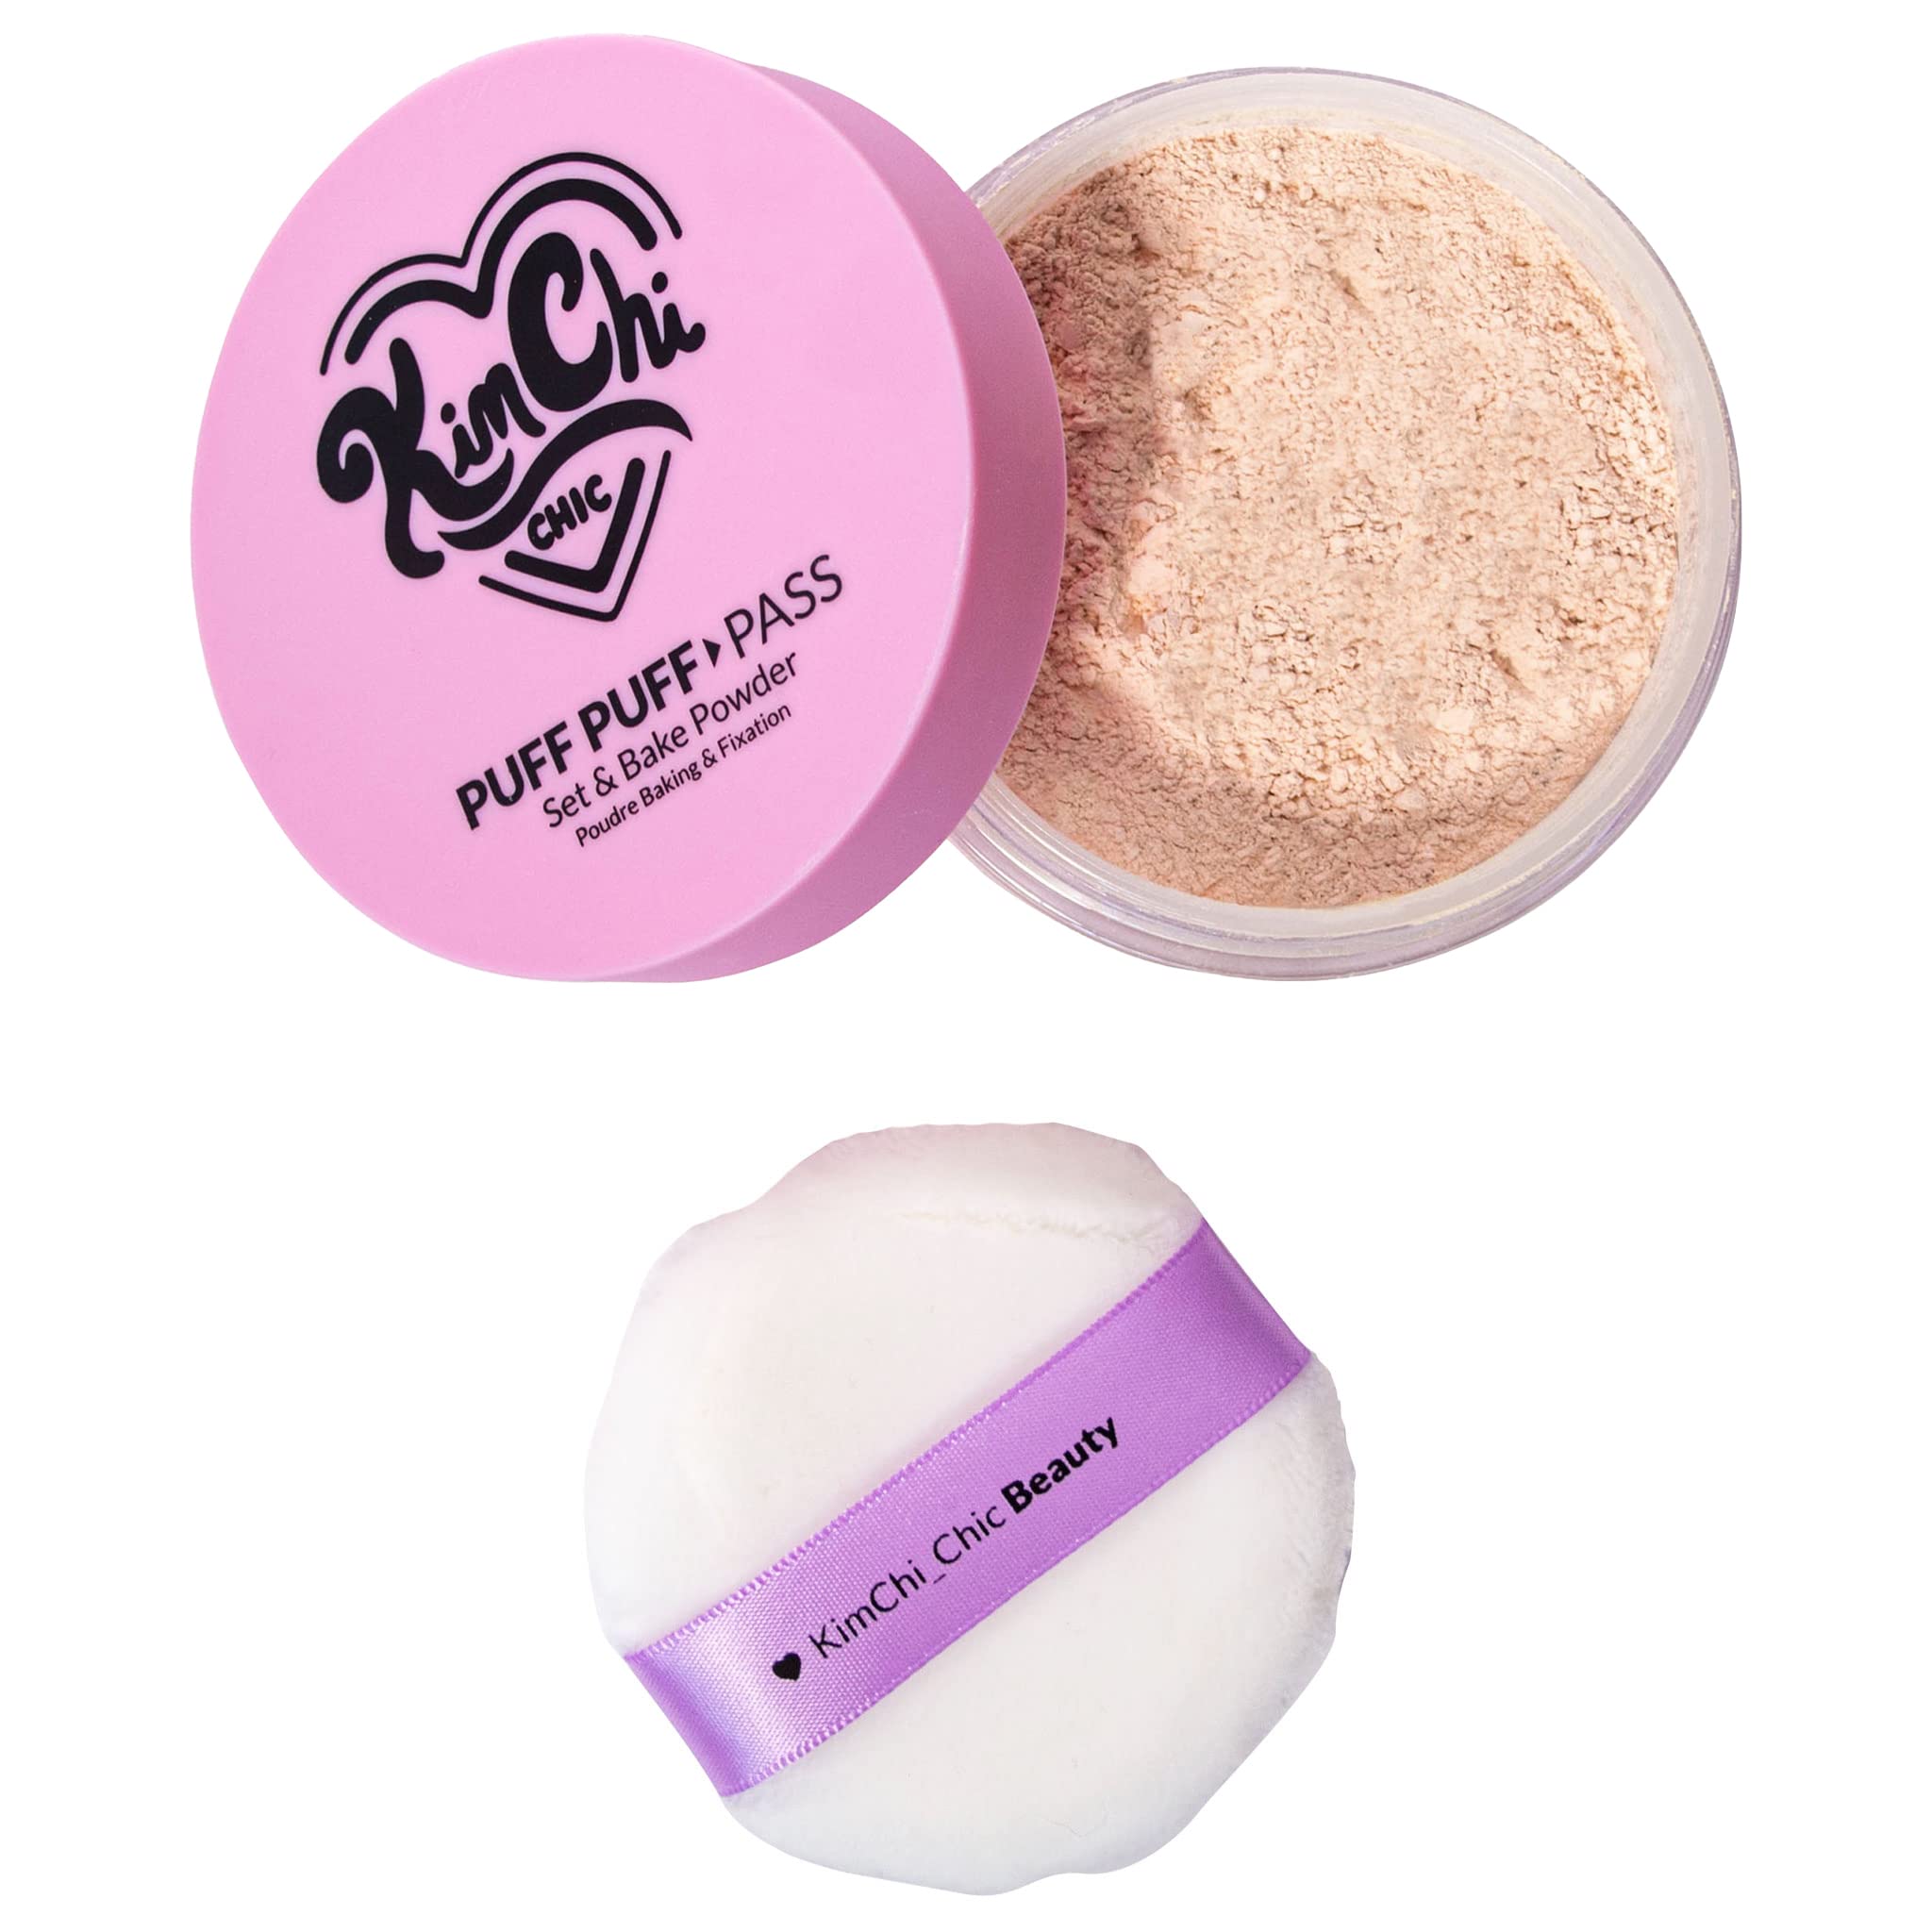 Kimchi Chic Beauty Puff Puff Pass Set & Bake Powder - Translucent